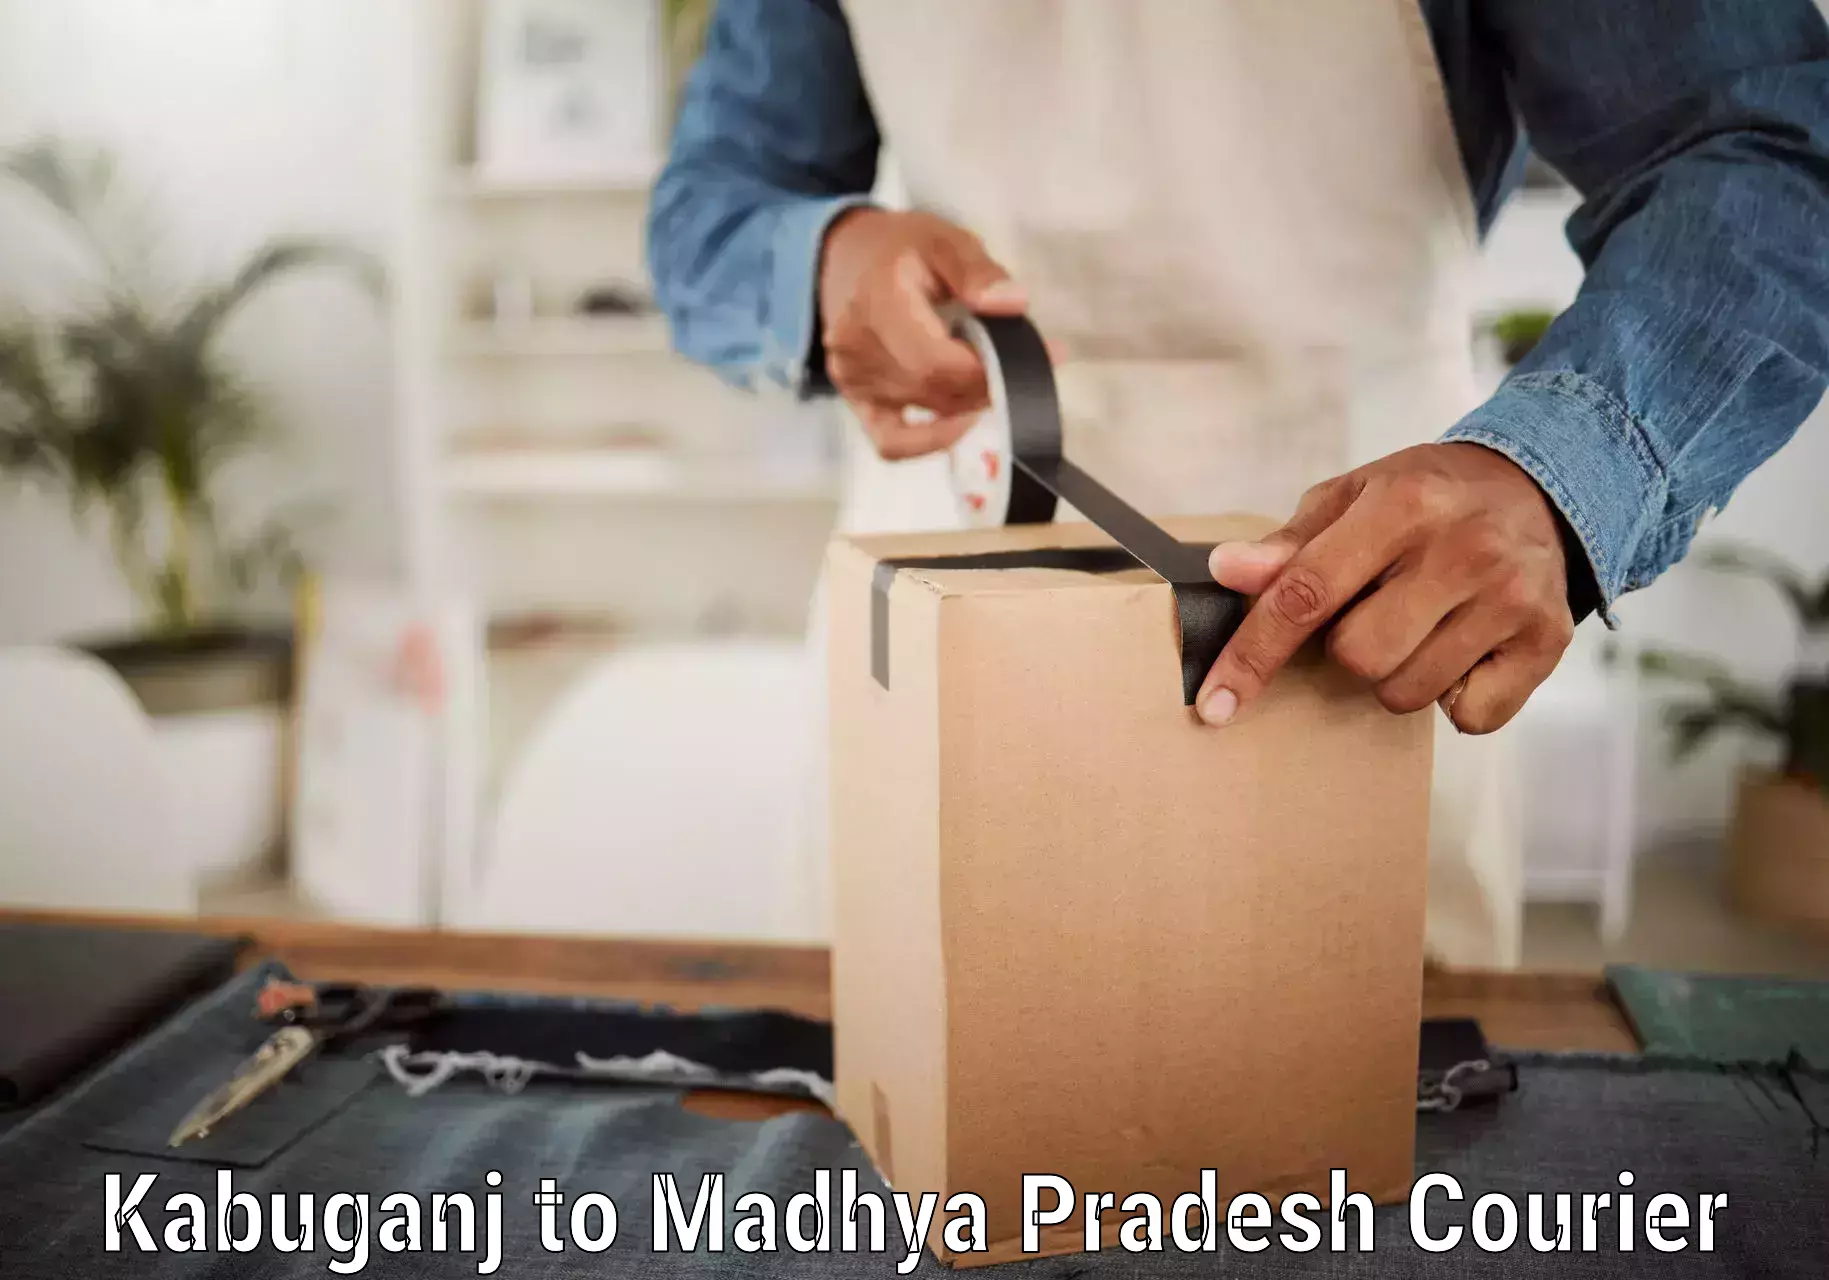 Easy return solutions Kabuganj to Madhya Pradesh